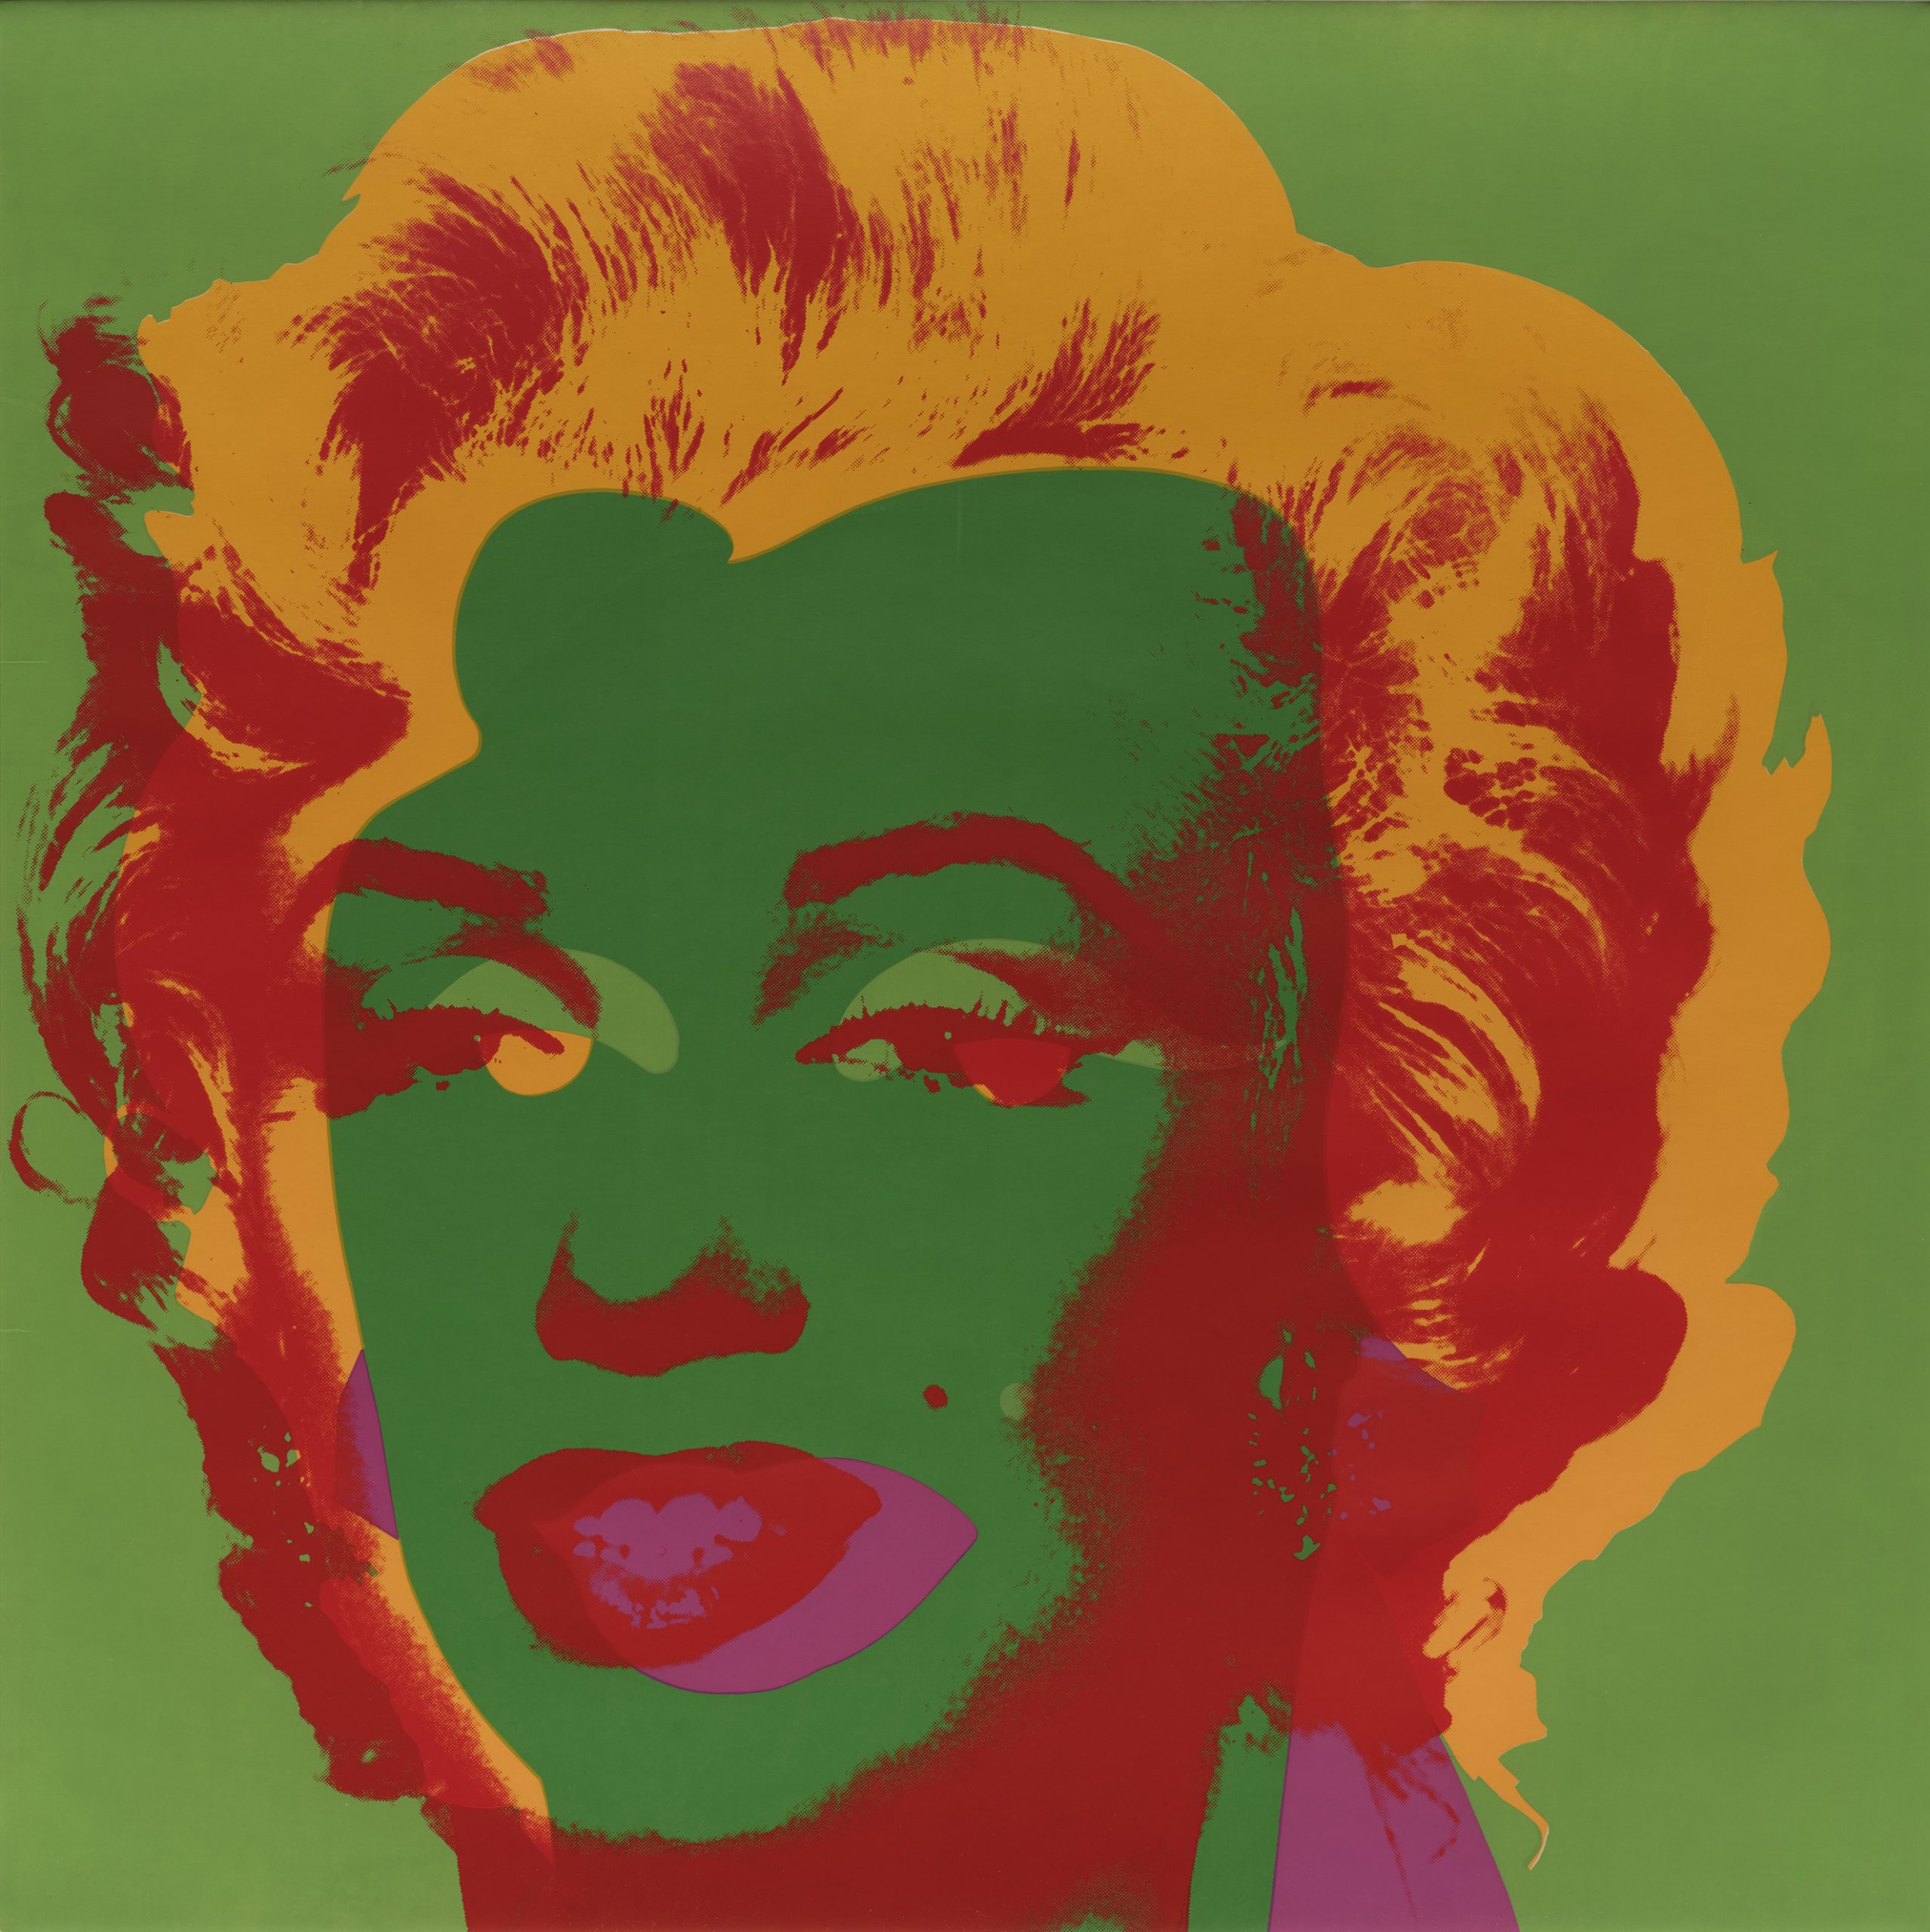 Marilyn Monroe (Marilyn) by Andy Warhol